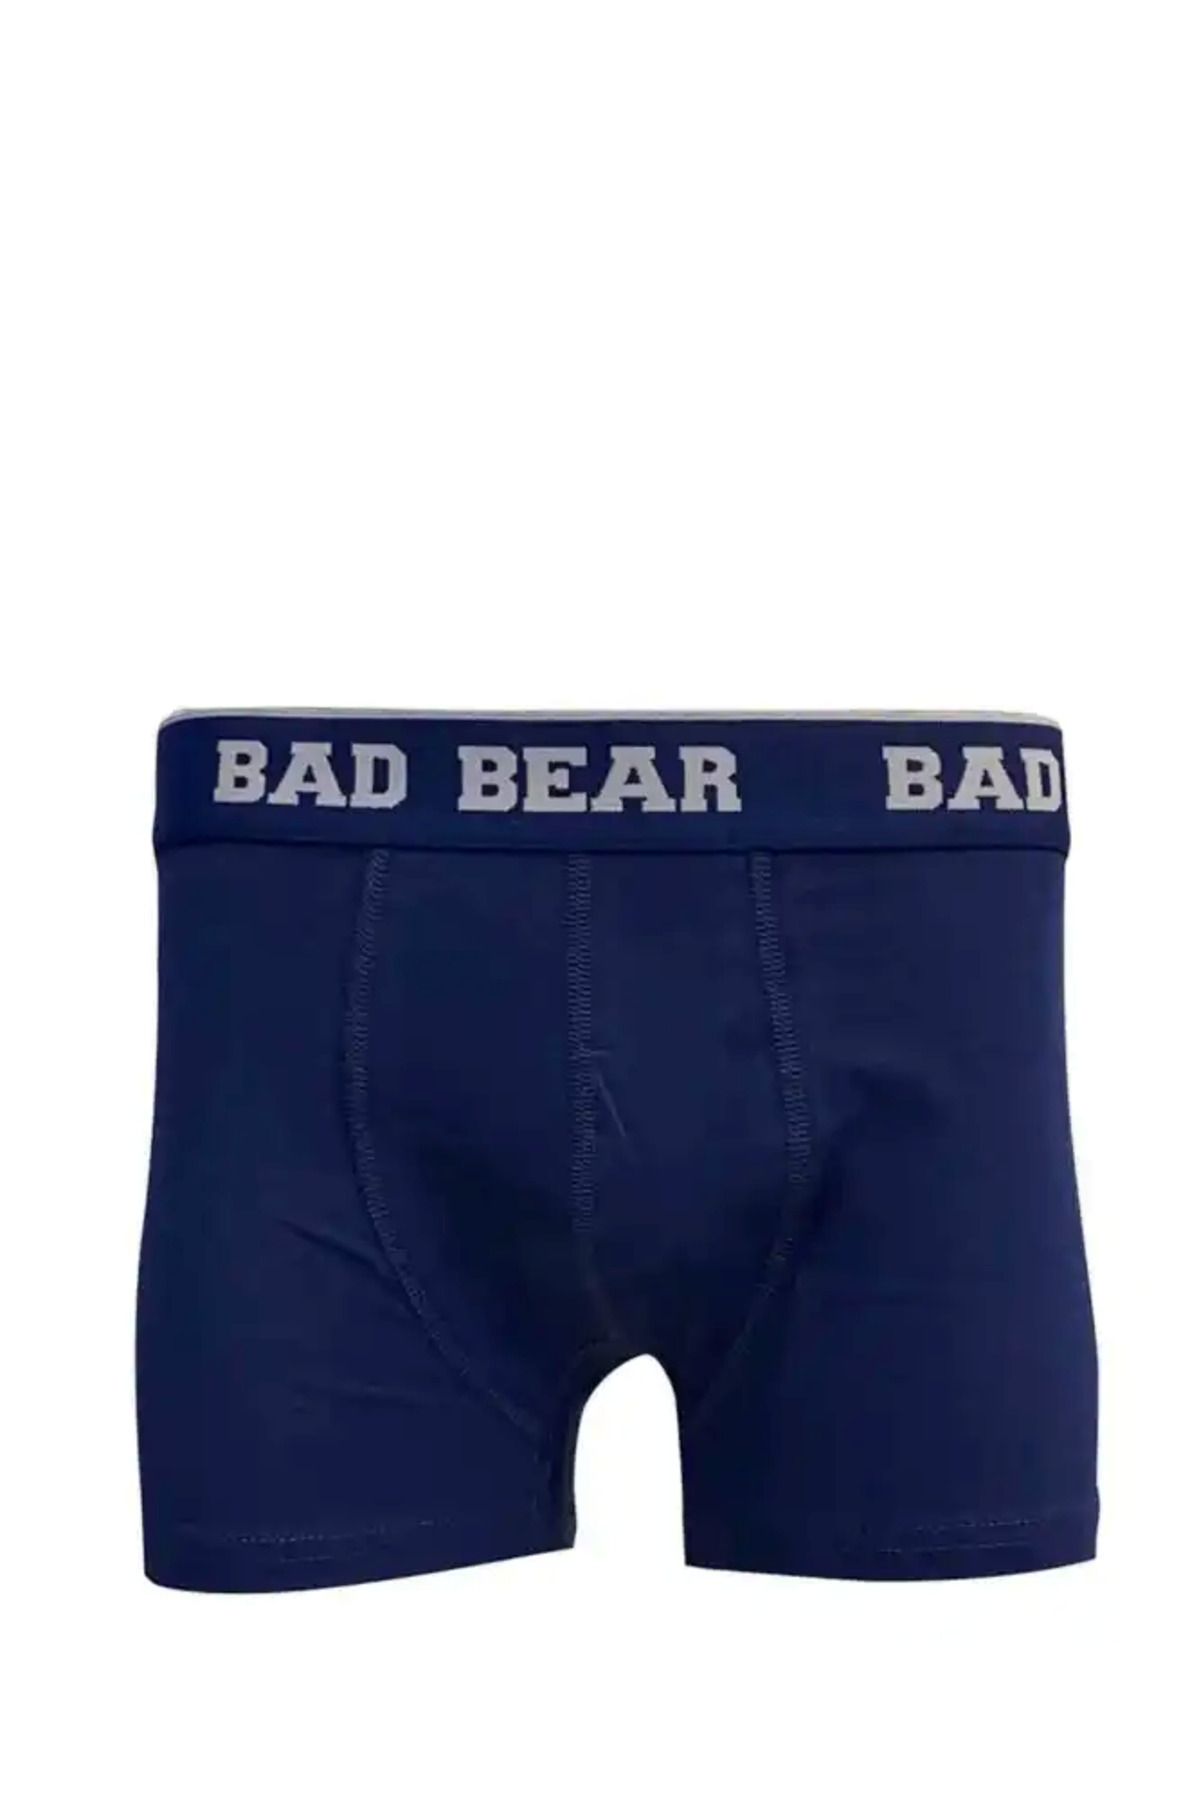 Bad Bear Basic Navy Blue 3-Pack Men's Boxers